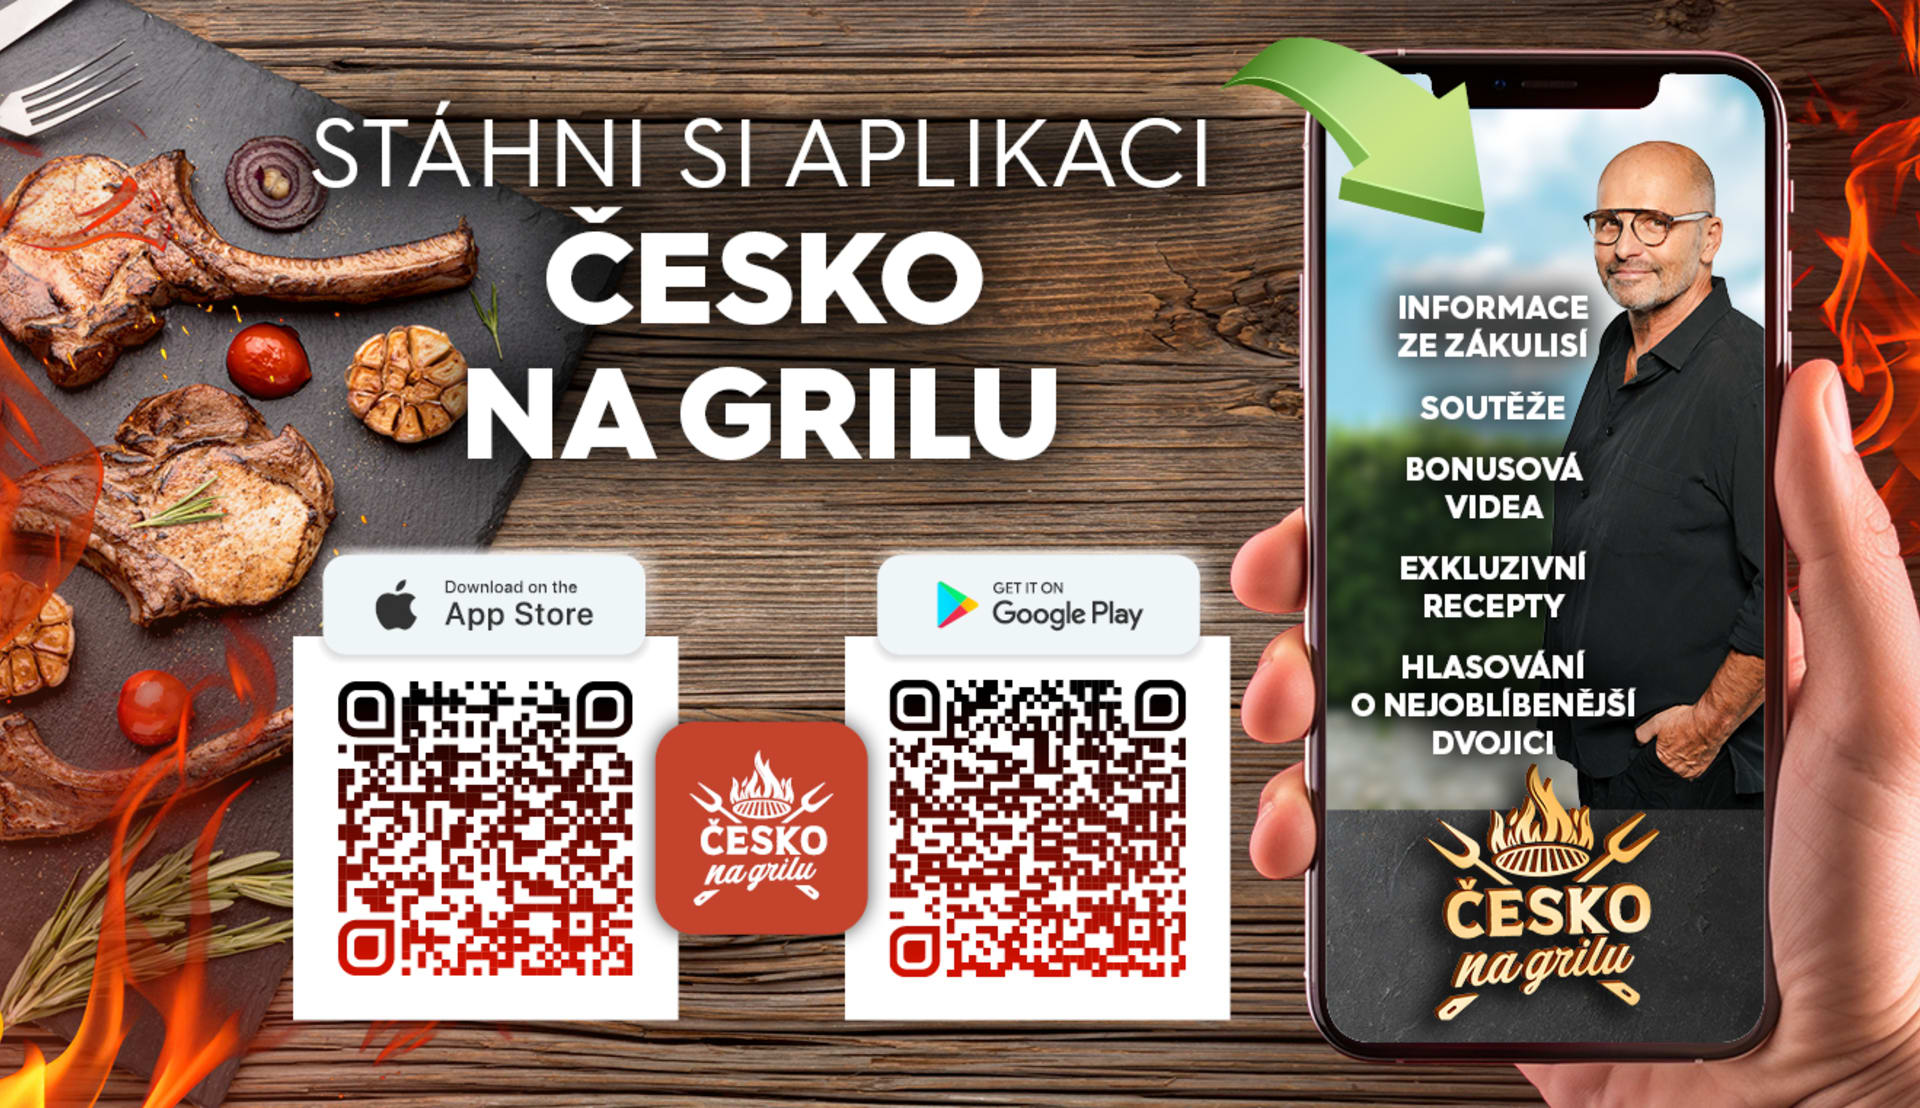 Stáhněte si aplikaci Česko na grilu